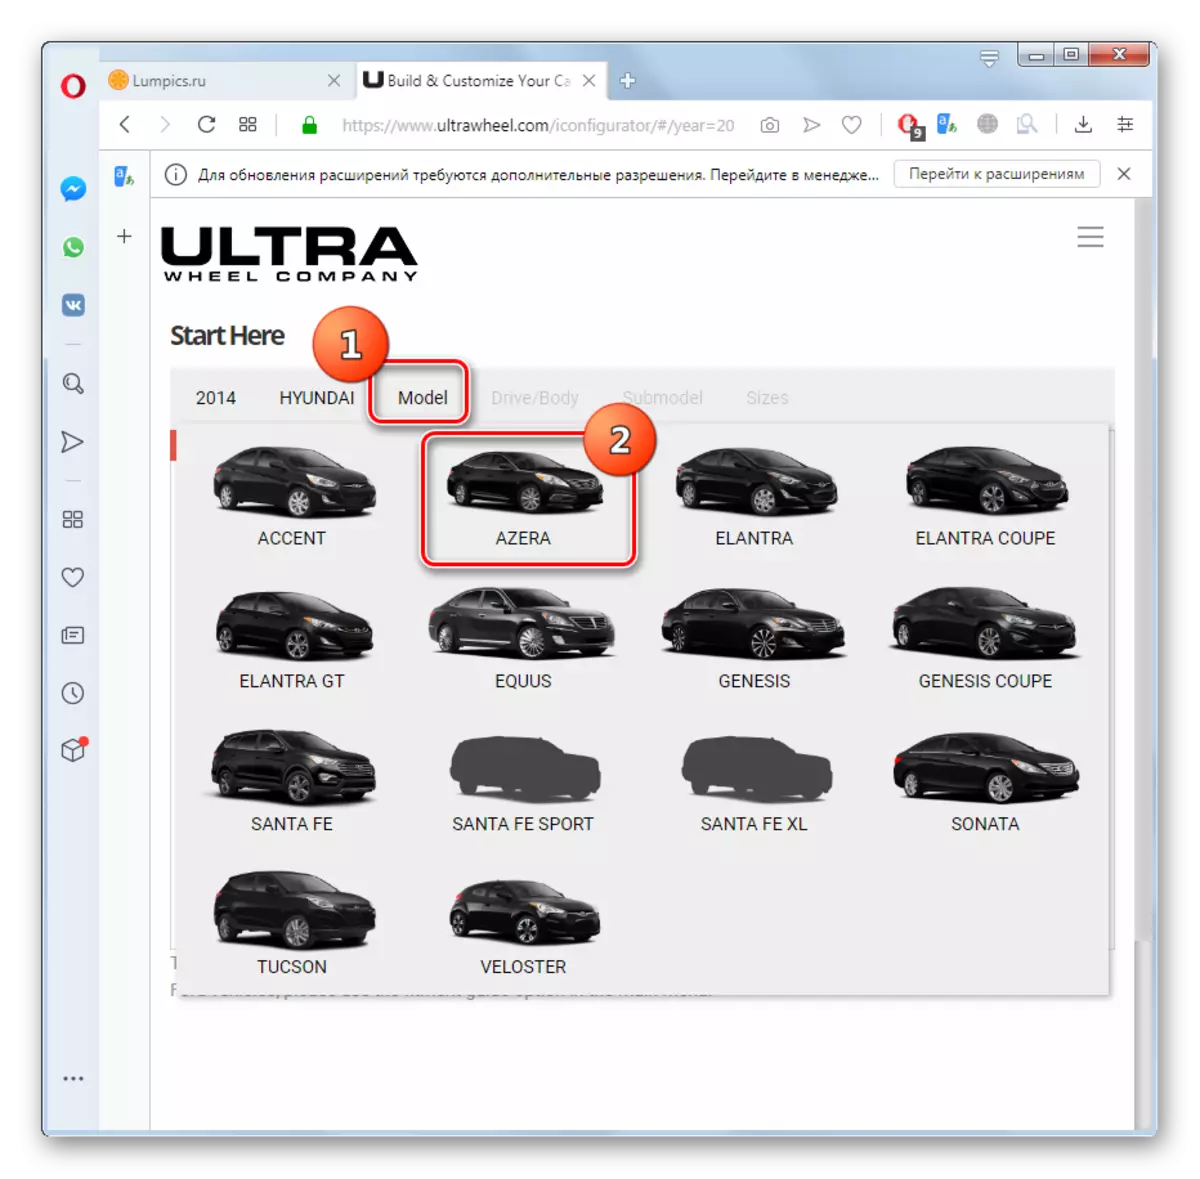 Opera Tarayıcısında UltraWheel Web Sitesinde Araba Modelinin Seçimi